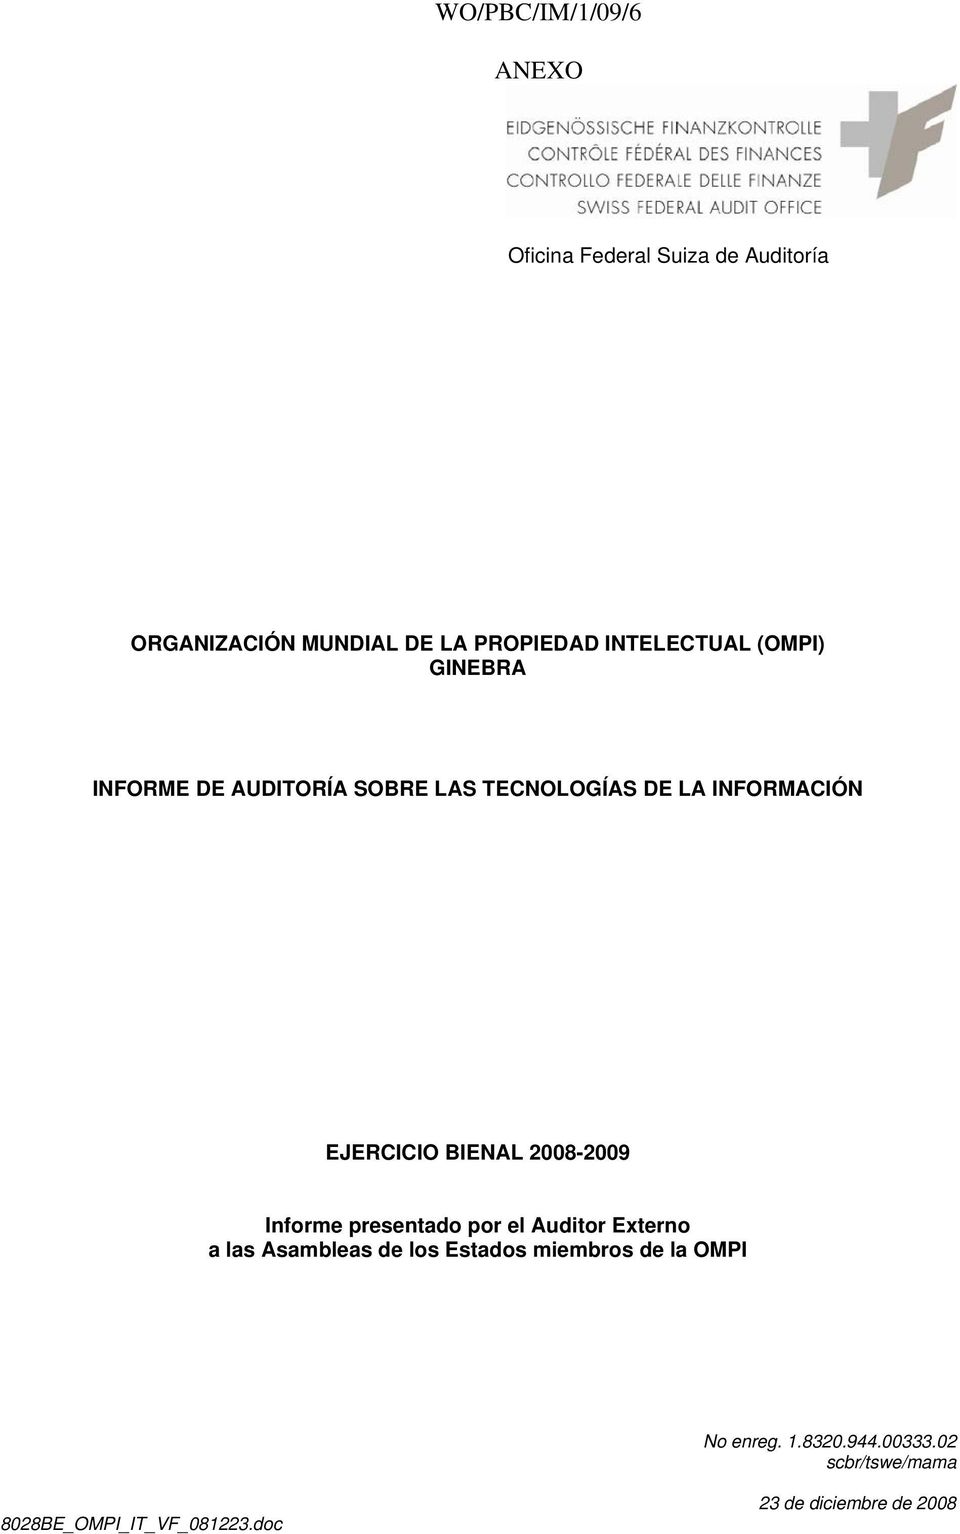 BIENAL 2008-2009 Informe presentado por el Auditor Externo a las Asambleas de los Estados miembros